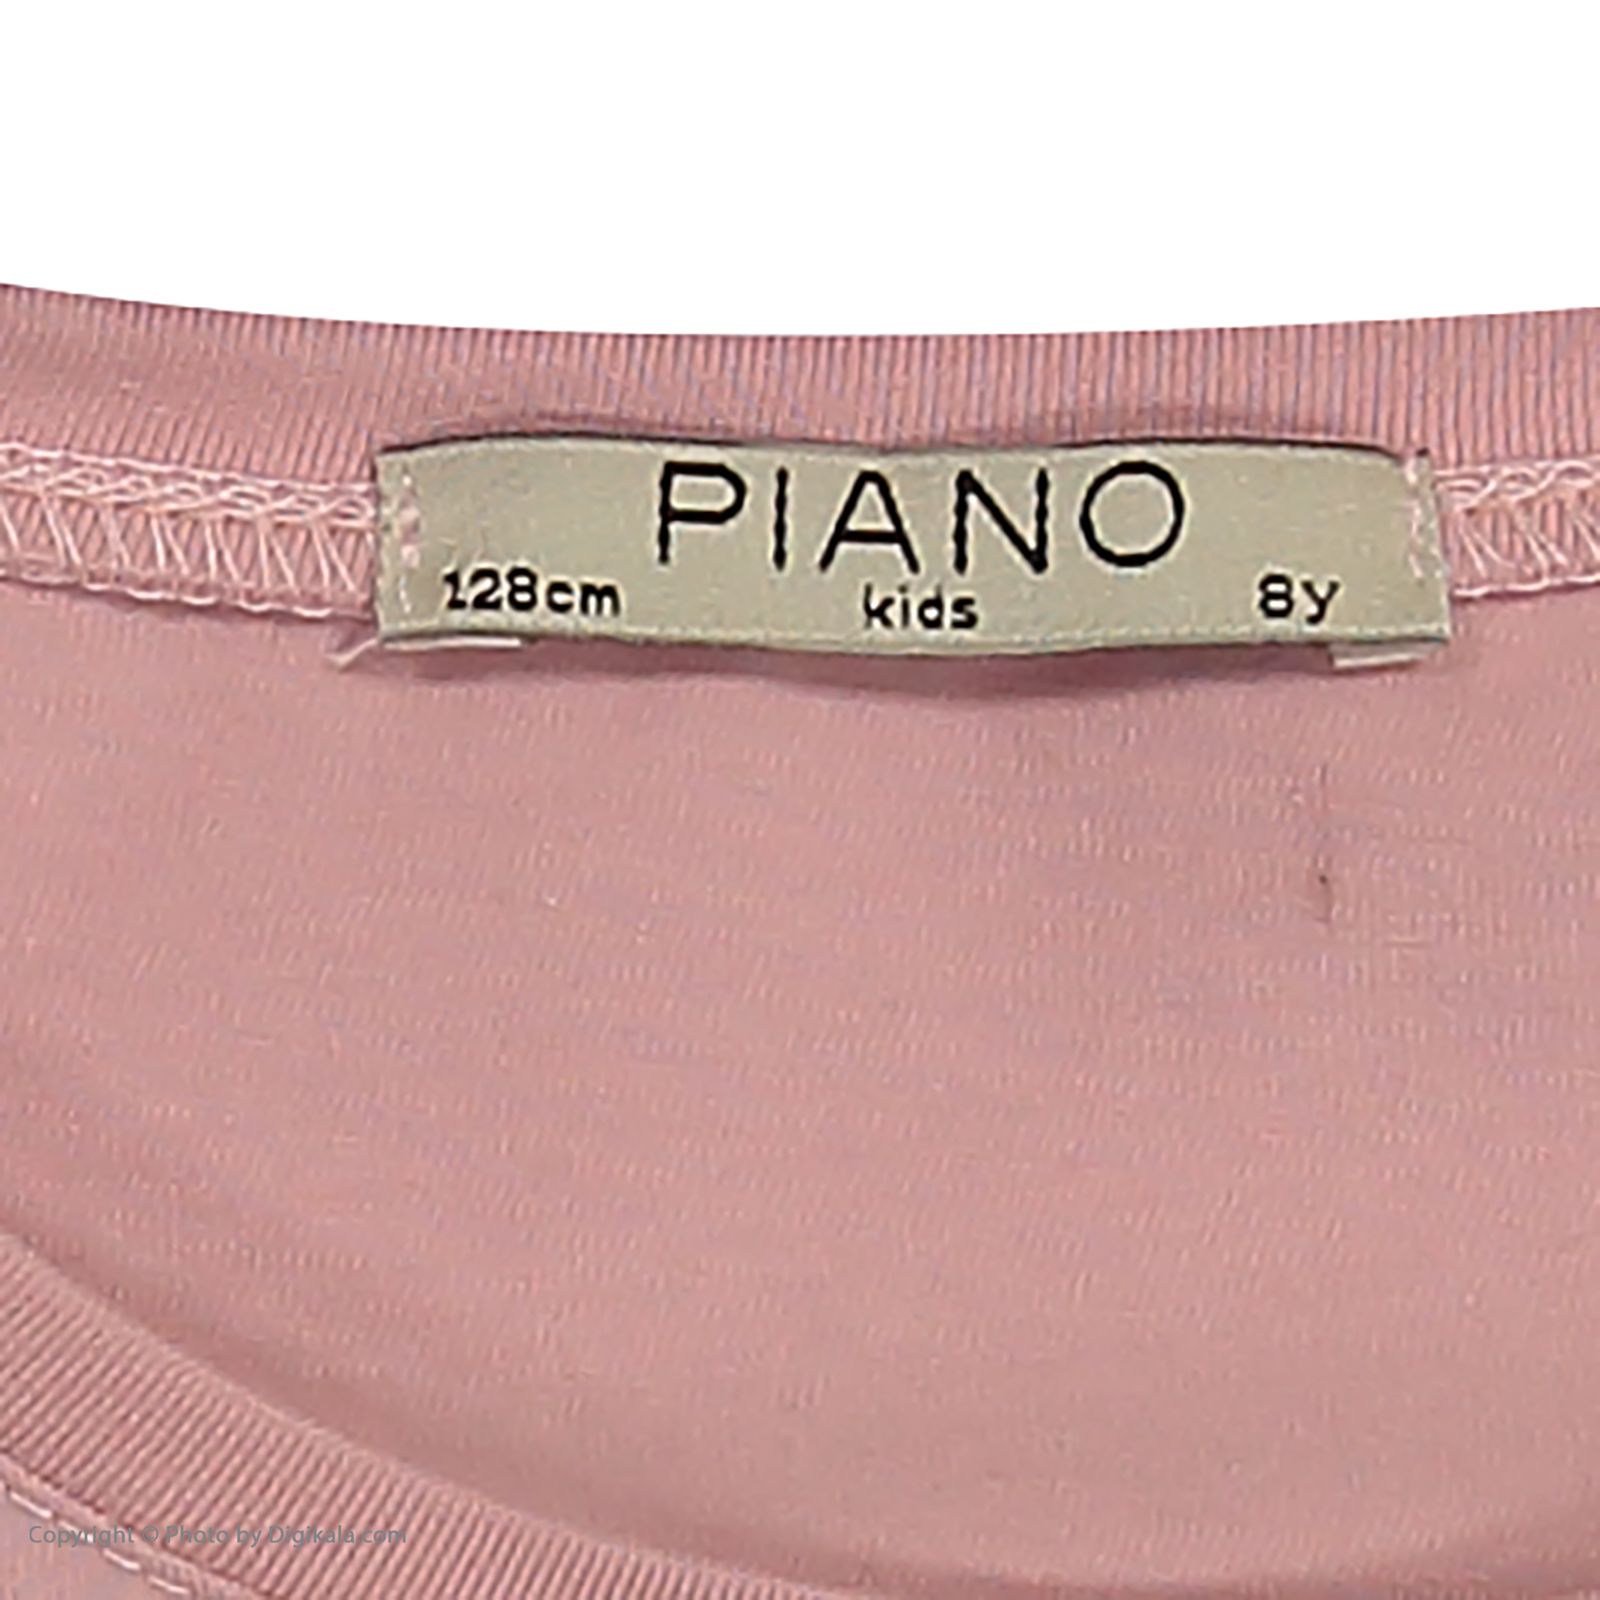 تی شرت دخترانه پیانو مدل 1830-82 -  - 5